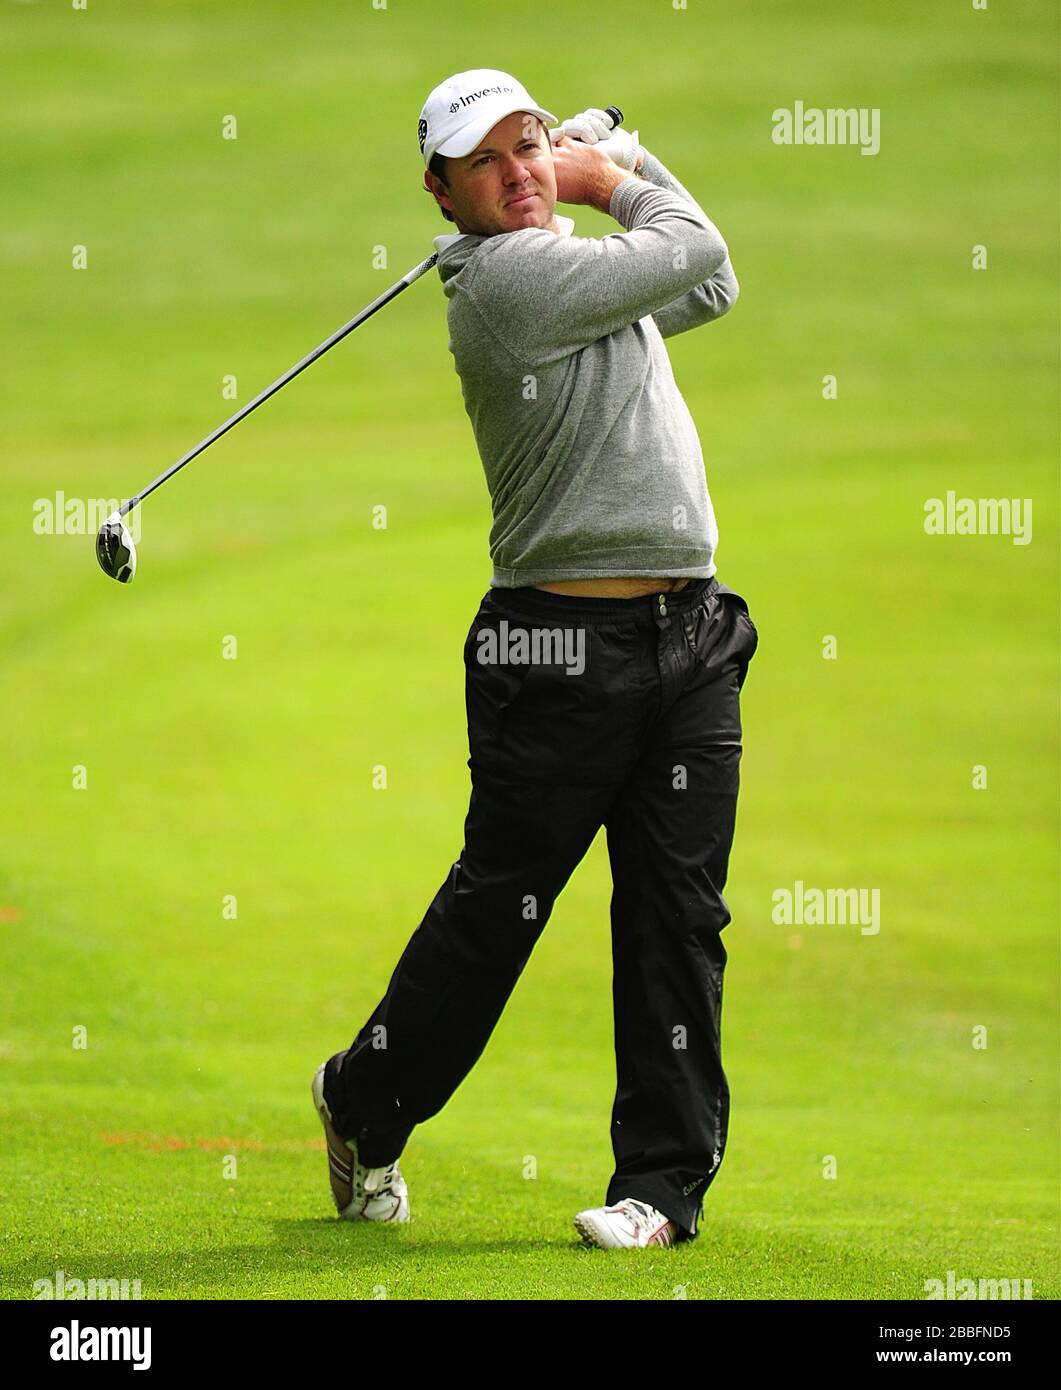 Richard Sterne d'Afrique du Sud pendant la première journée du championnat BMW PGA 2013, au club de golf Wentworth. Banque D'Images